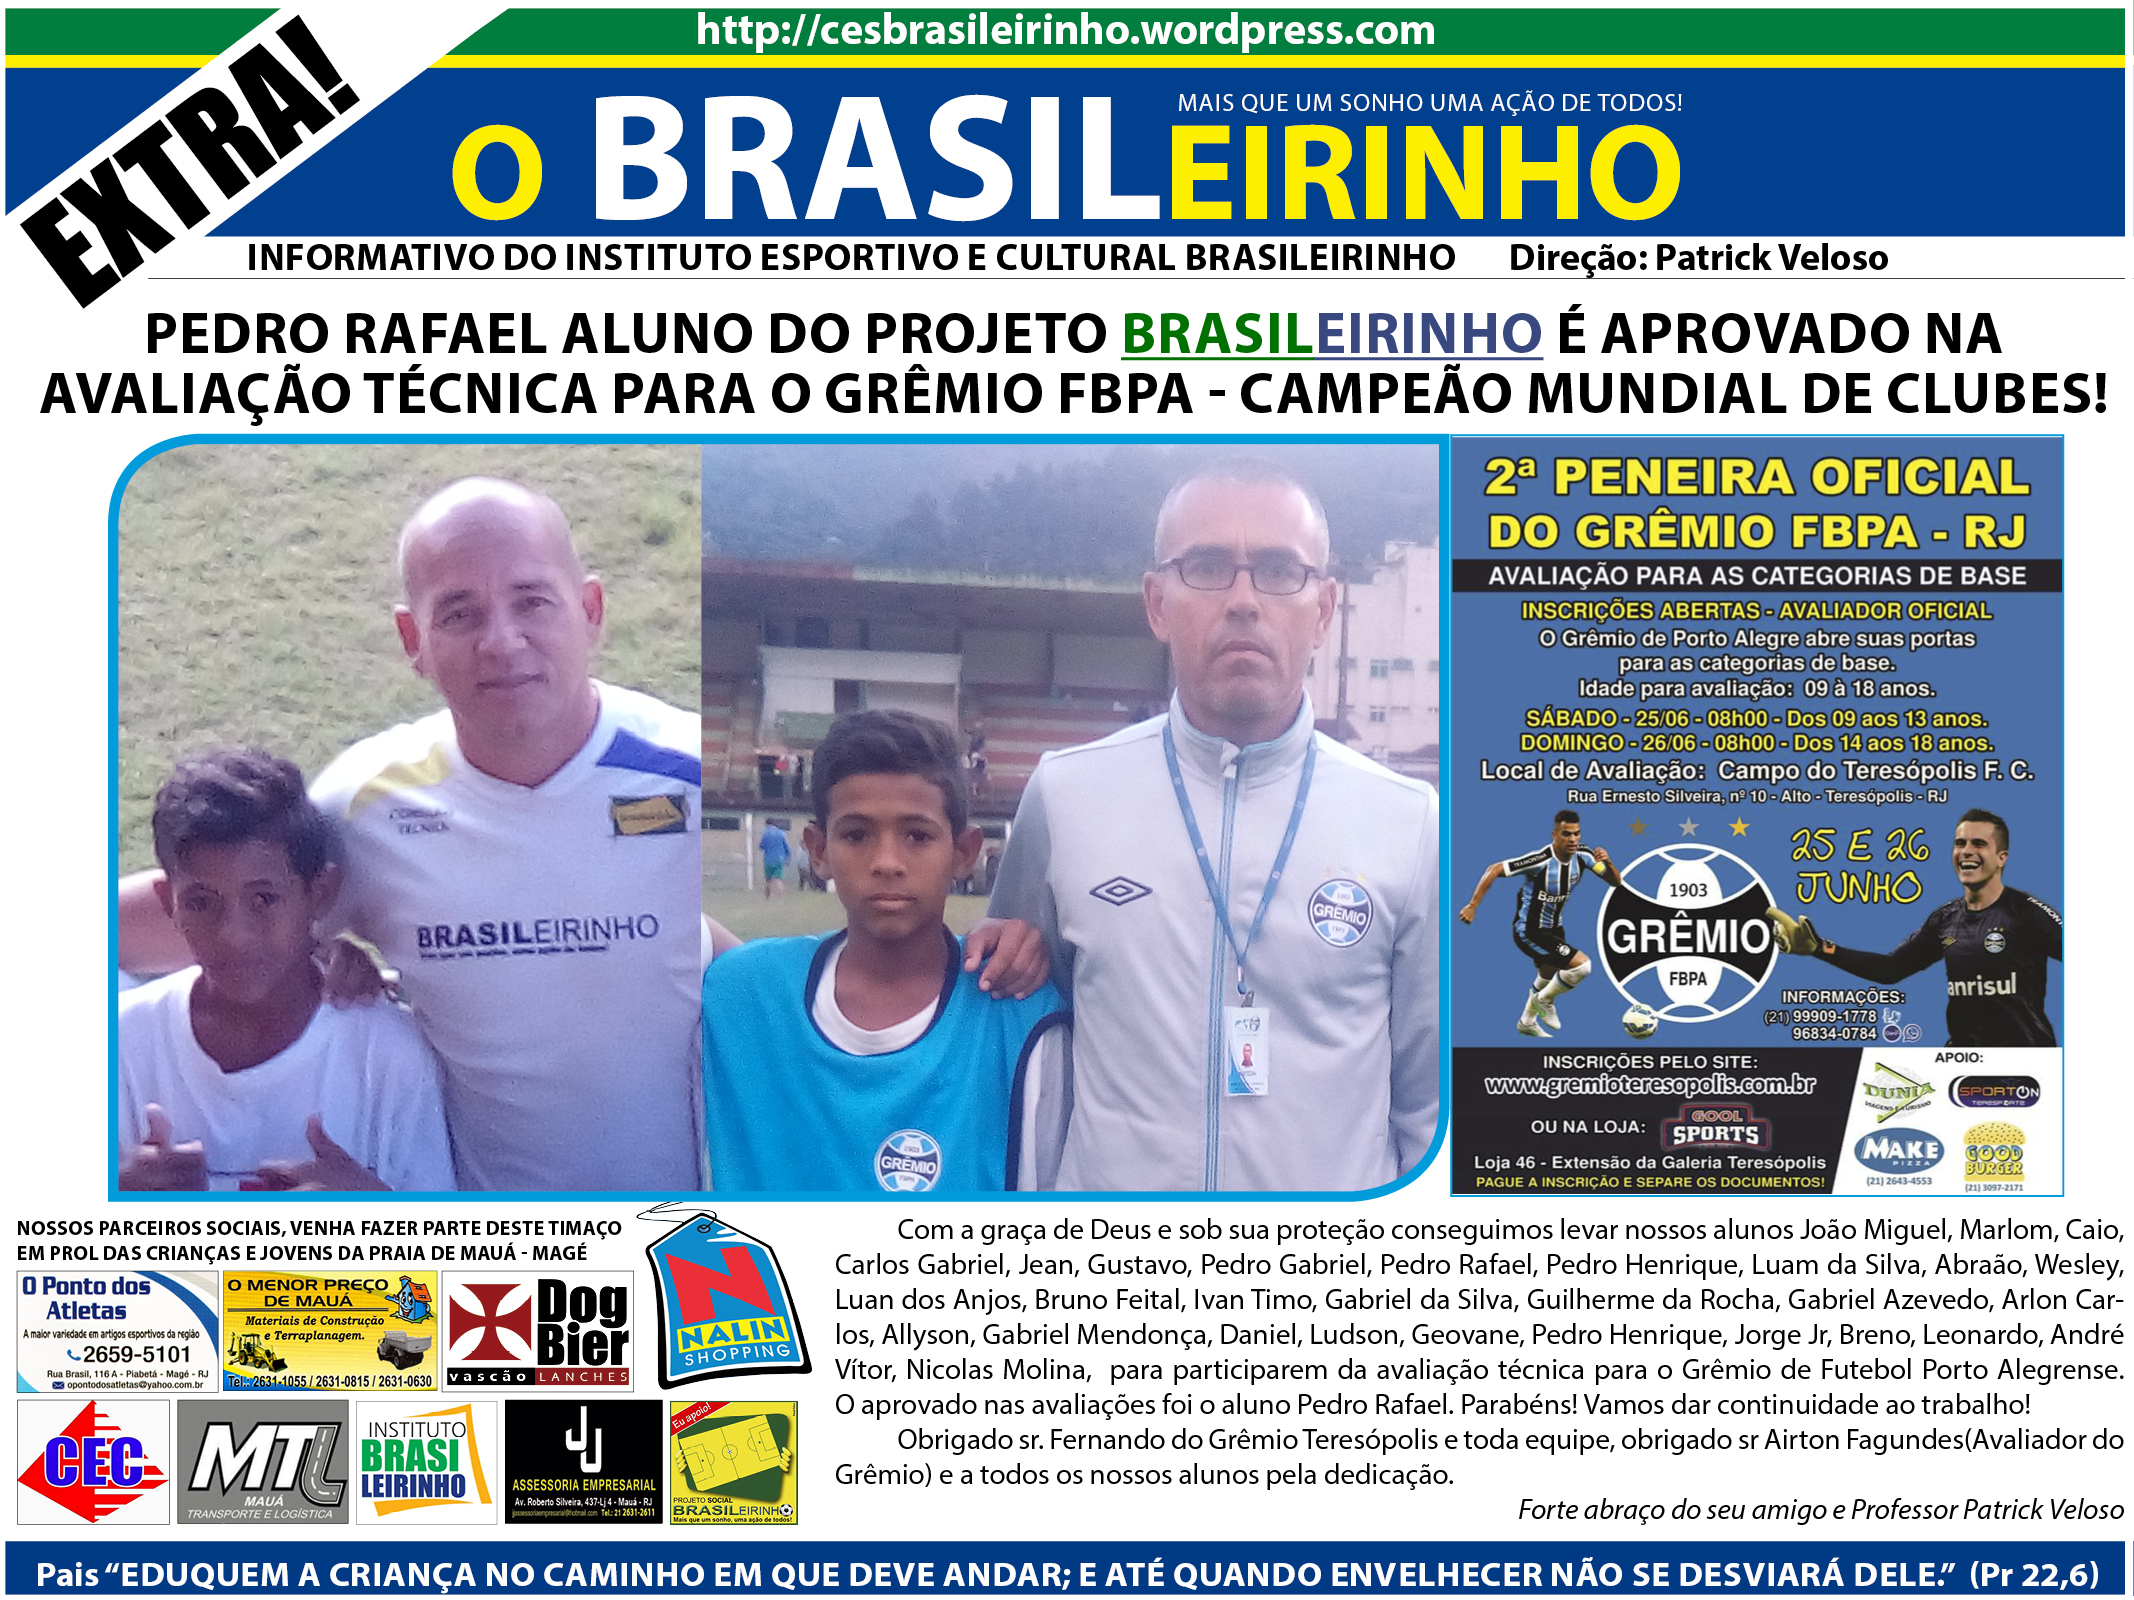 Pedro rafael aluno do Projeto Brasileirinho é aprovado